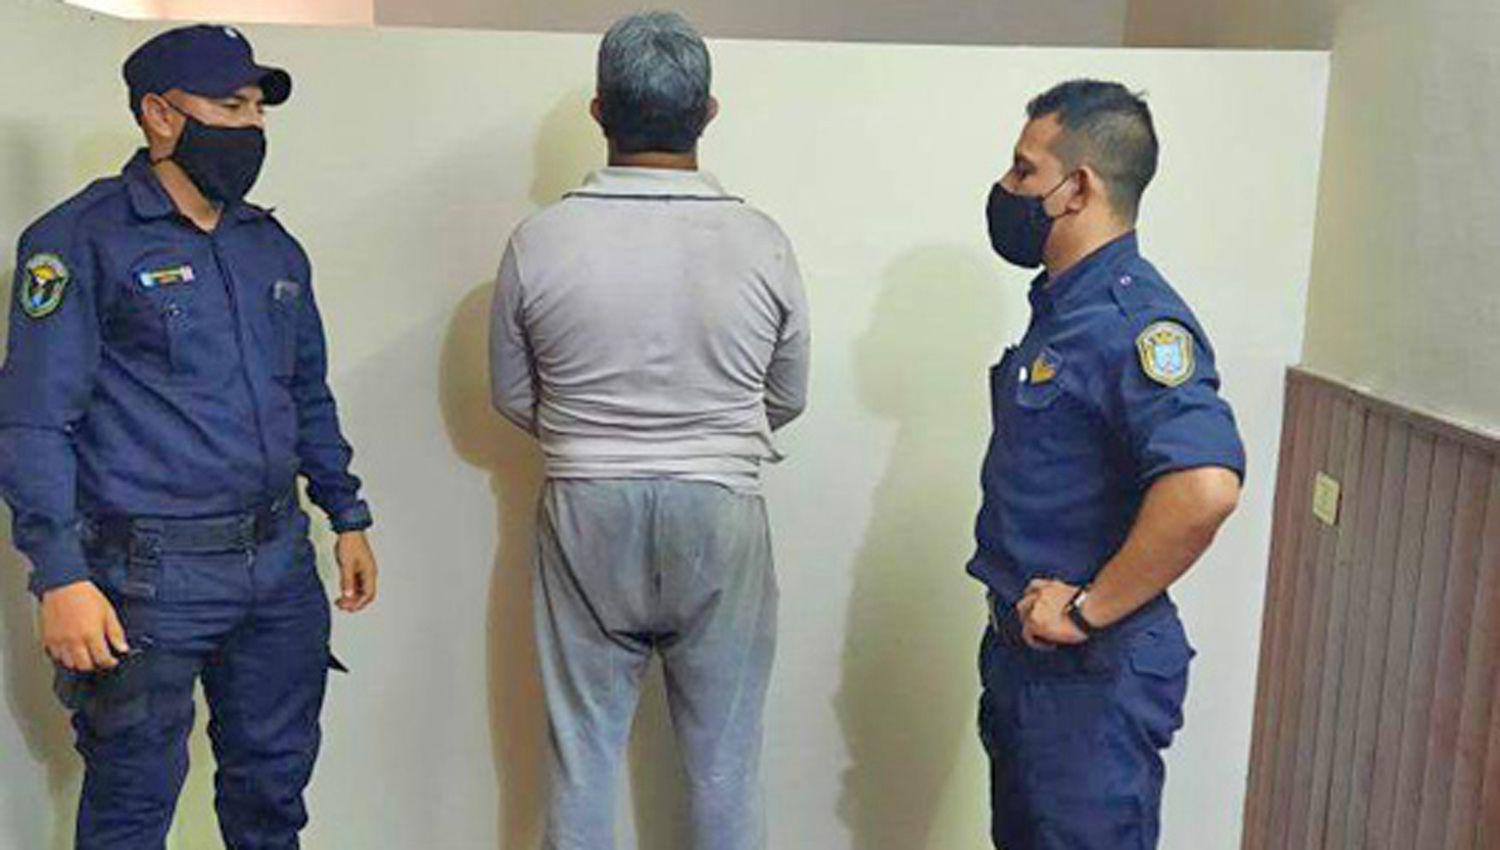 Albantildeil acusado de vejar a su hijastra cayoacute preso tras 4 antildeos